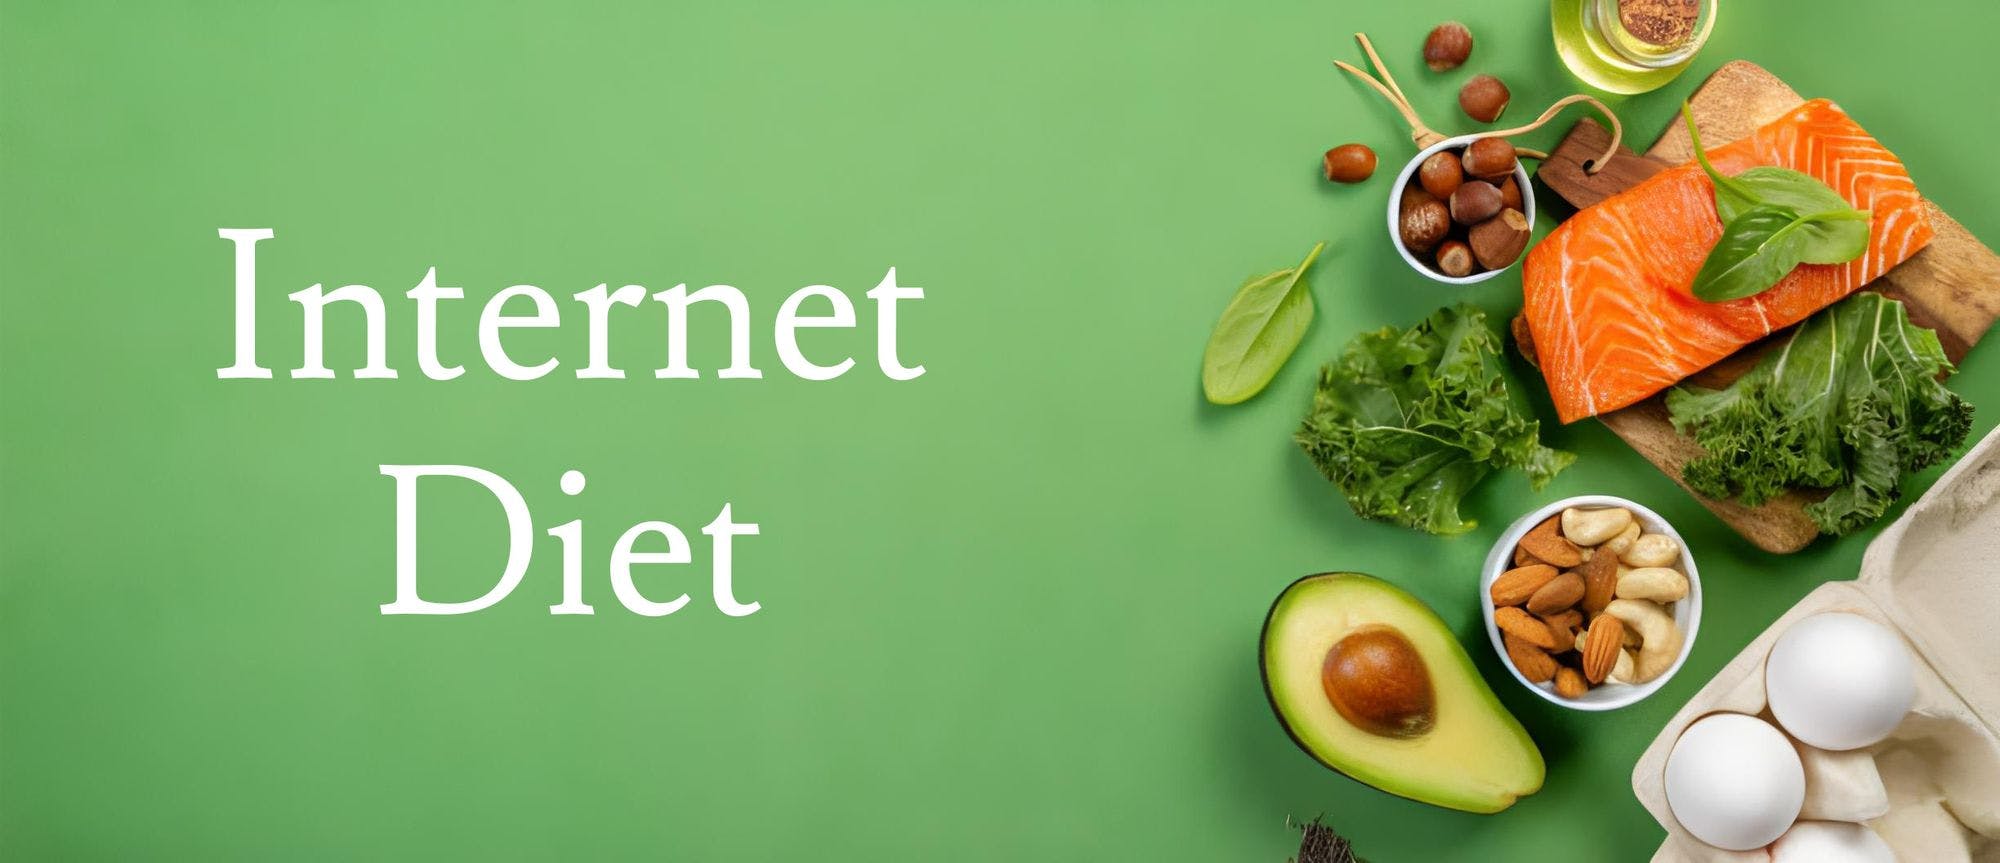 Internet Diet